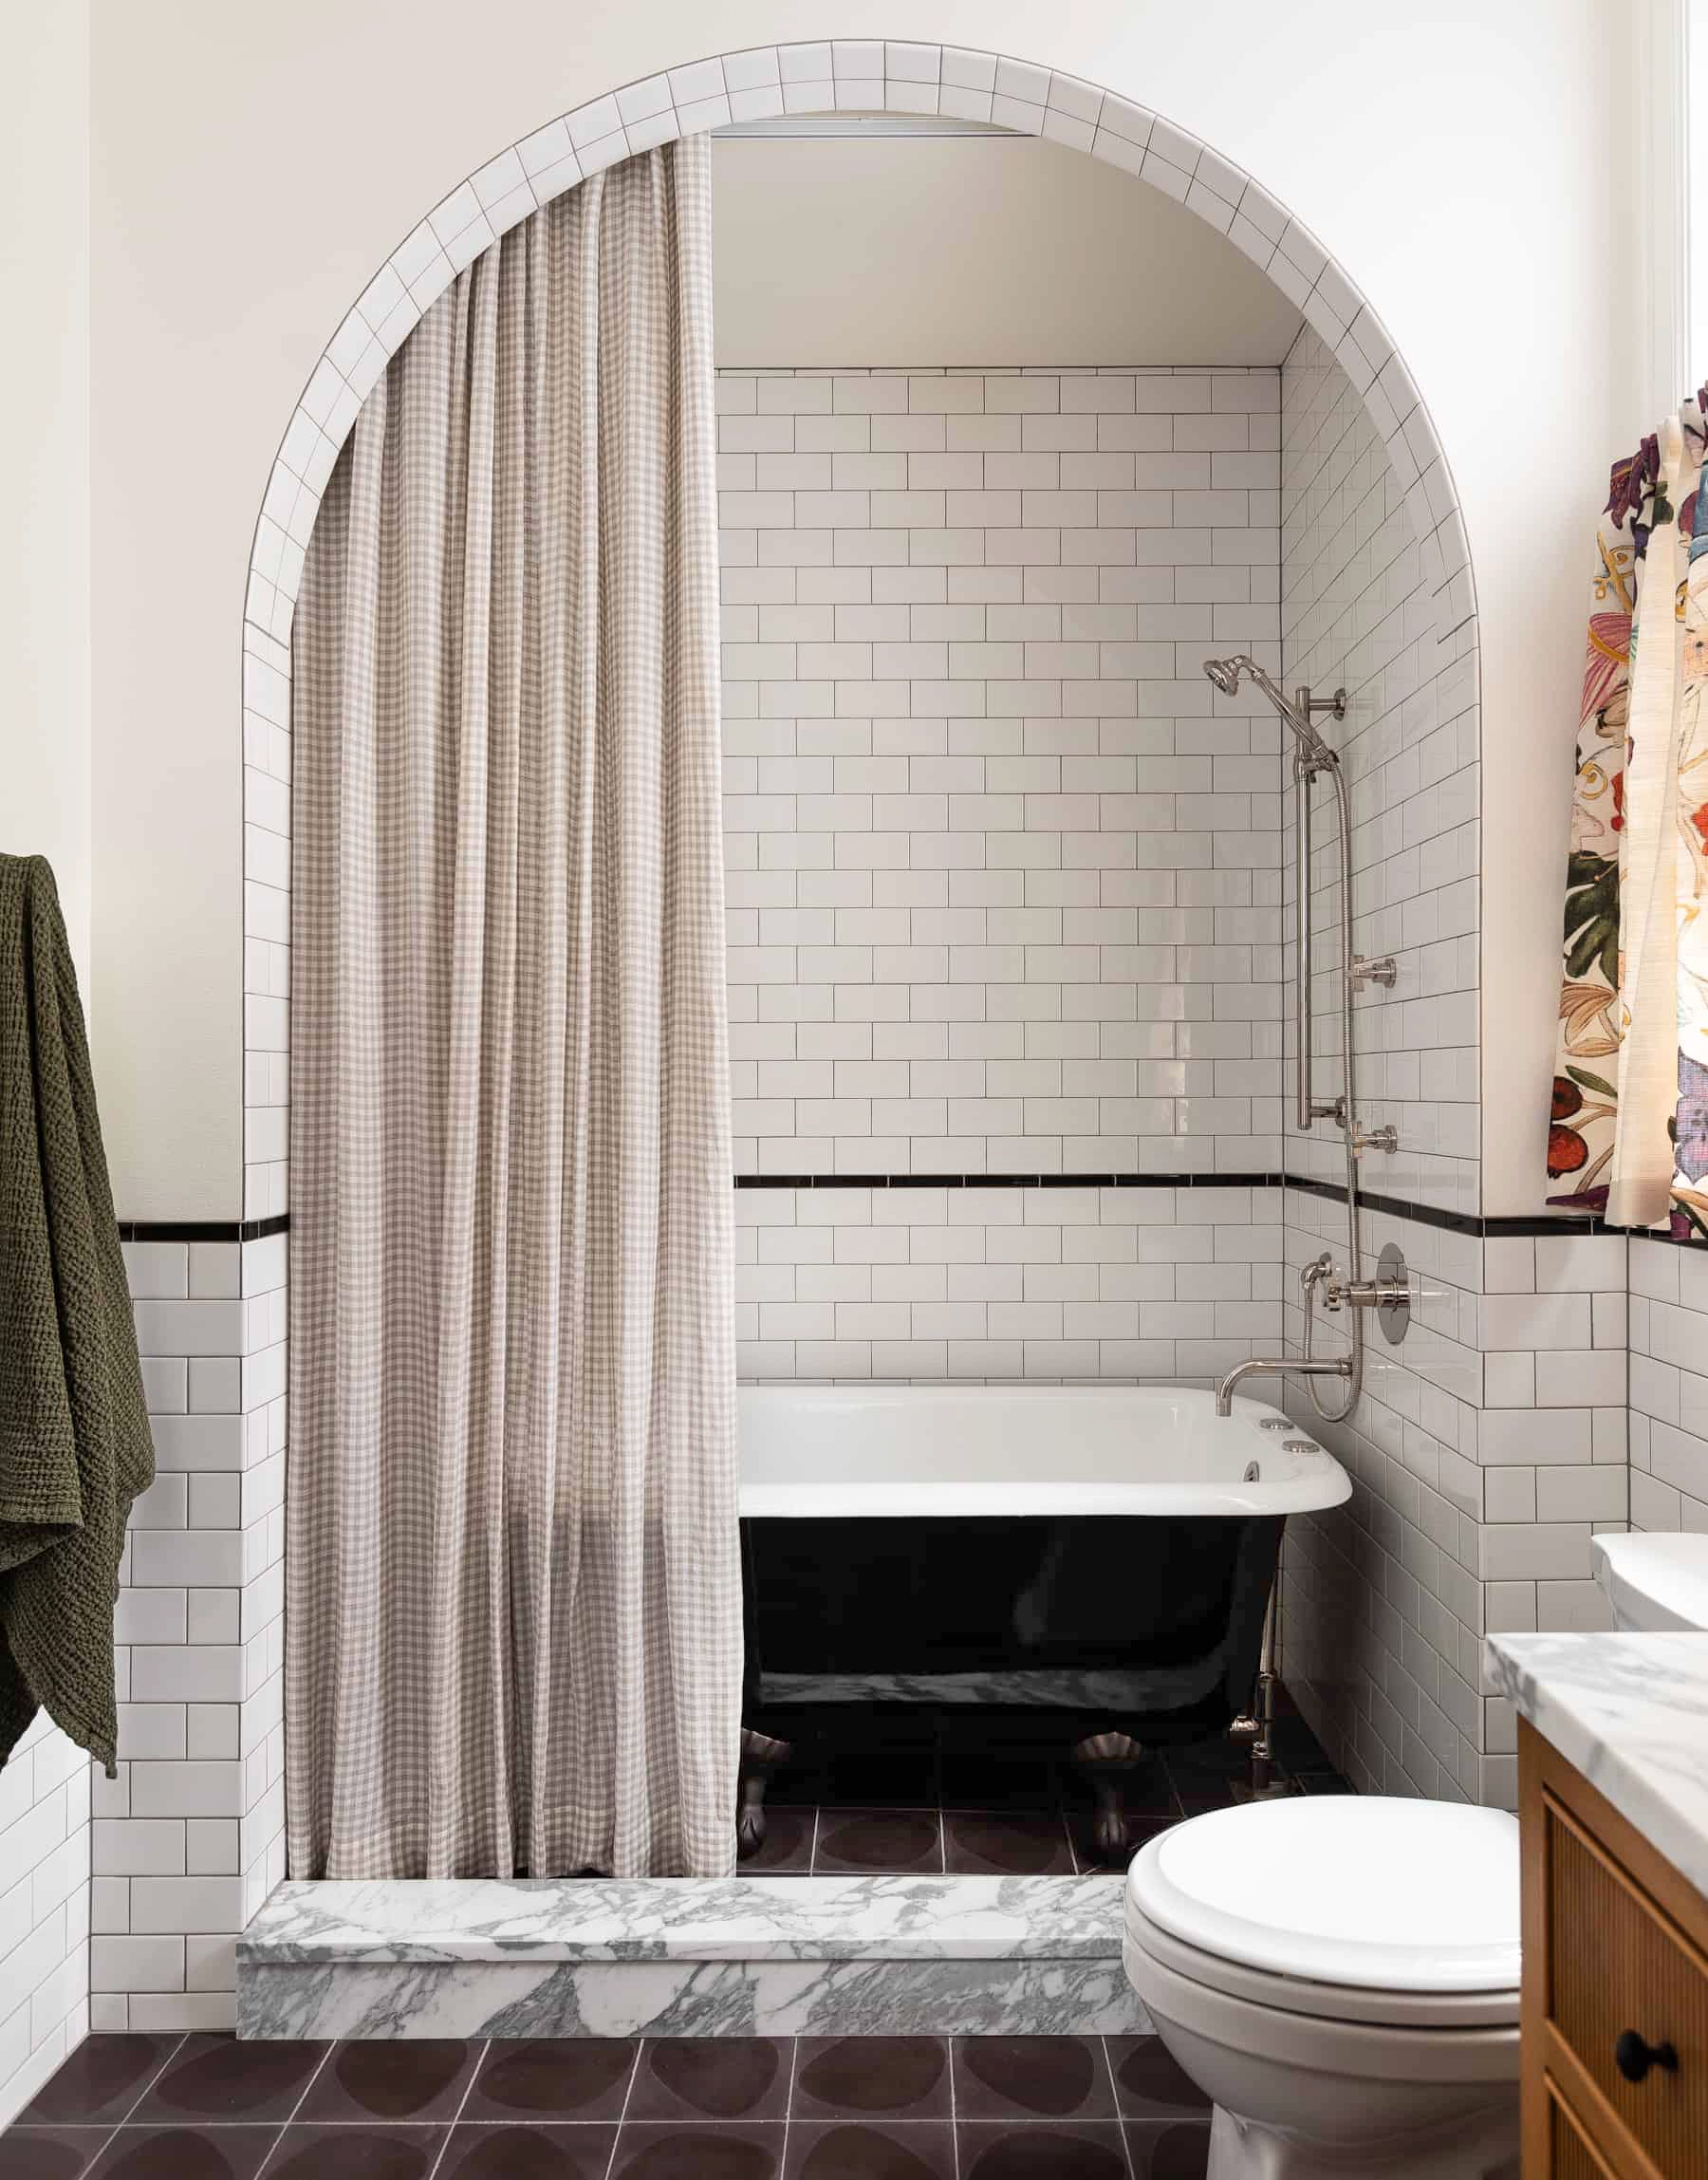 55 Bathroom Tile Ideas Bath, Pics Of Tiled Bathtubs